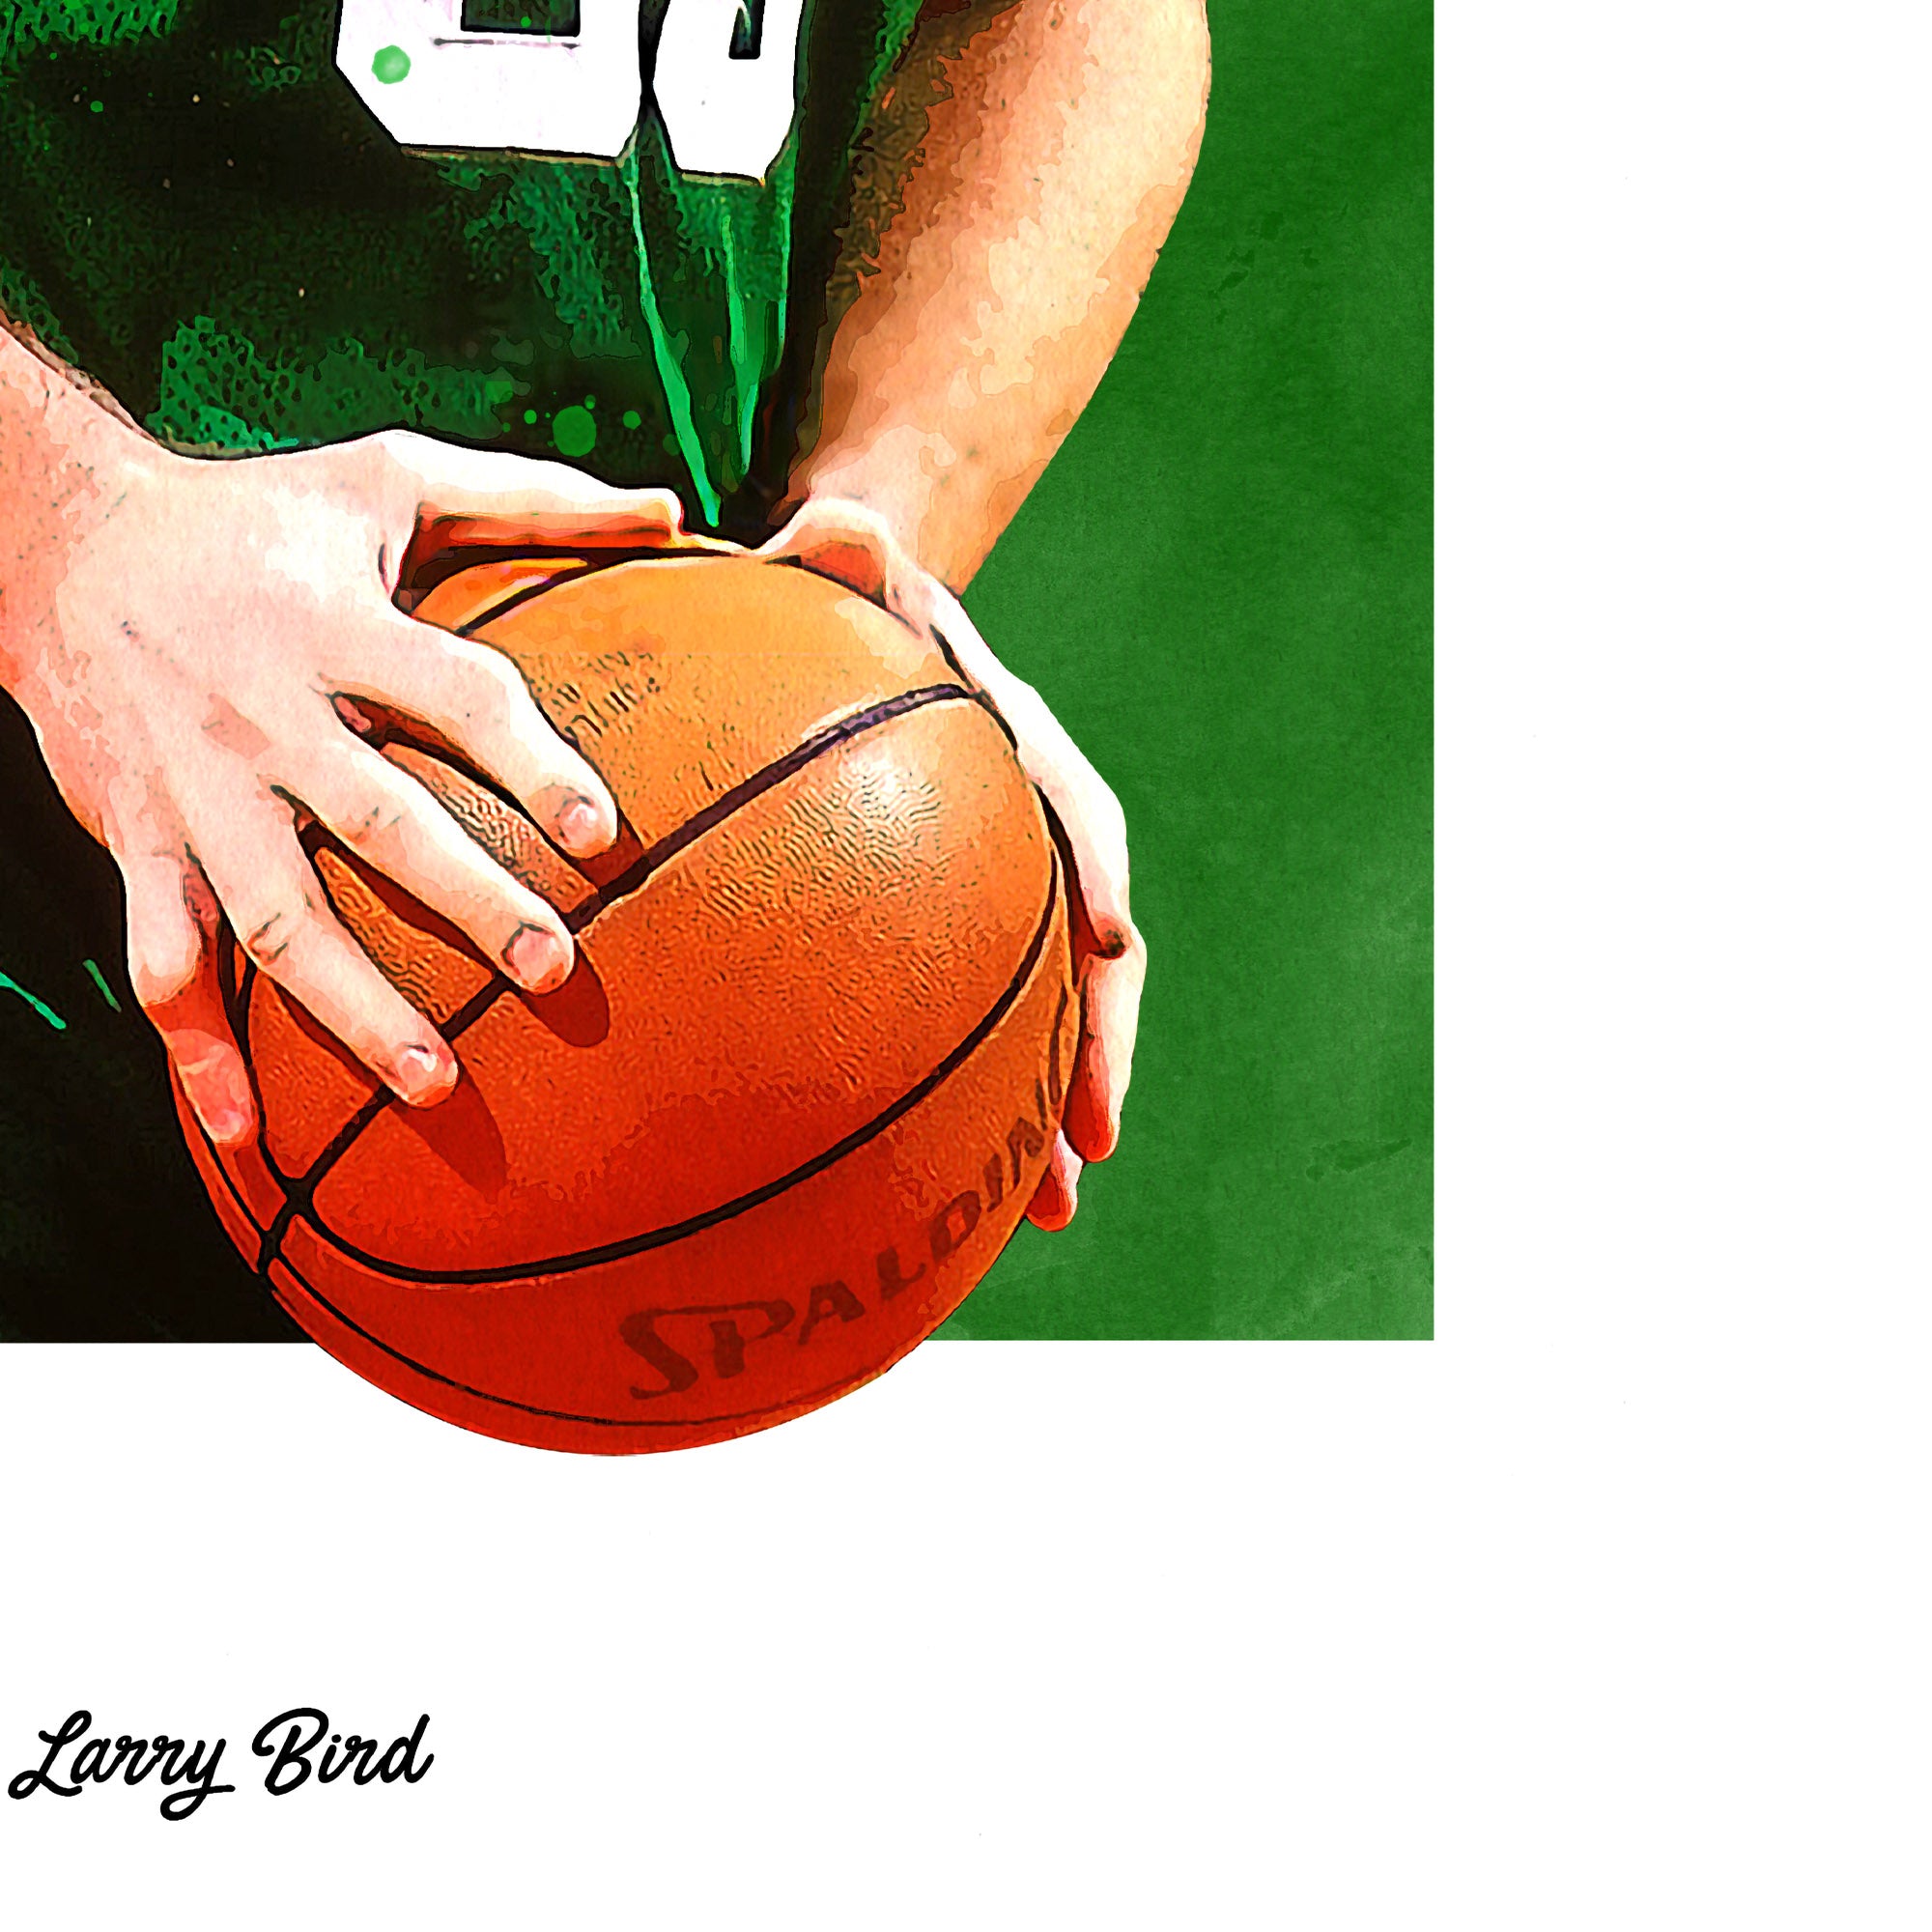  Larry Bird Poster Basketball Wall Art 1 Canvas Wall